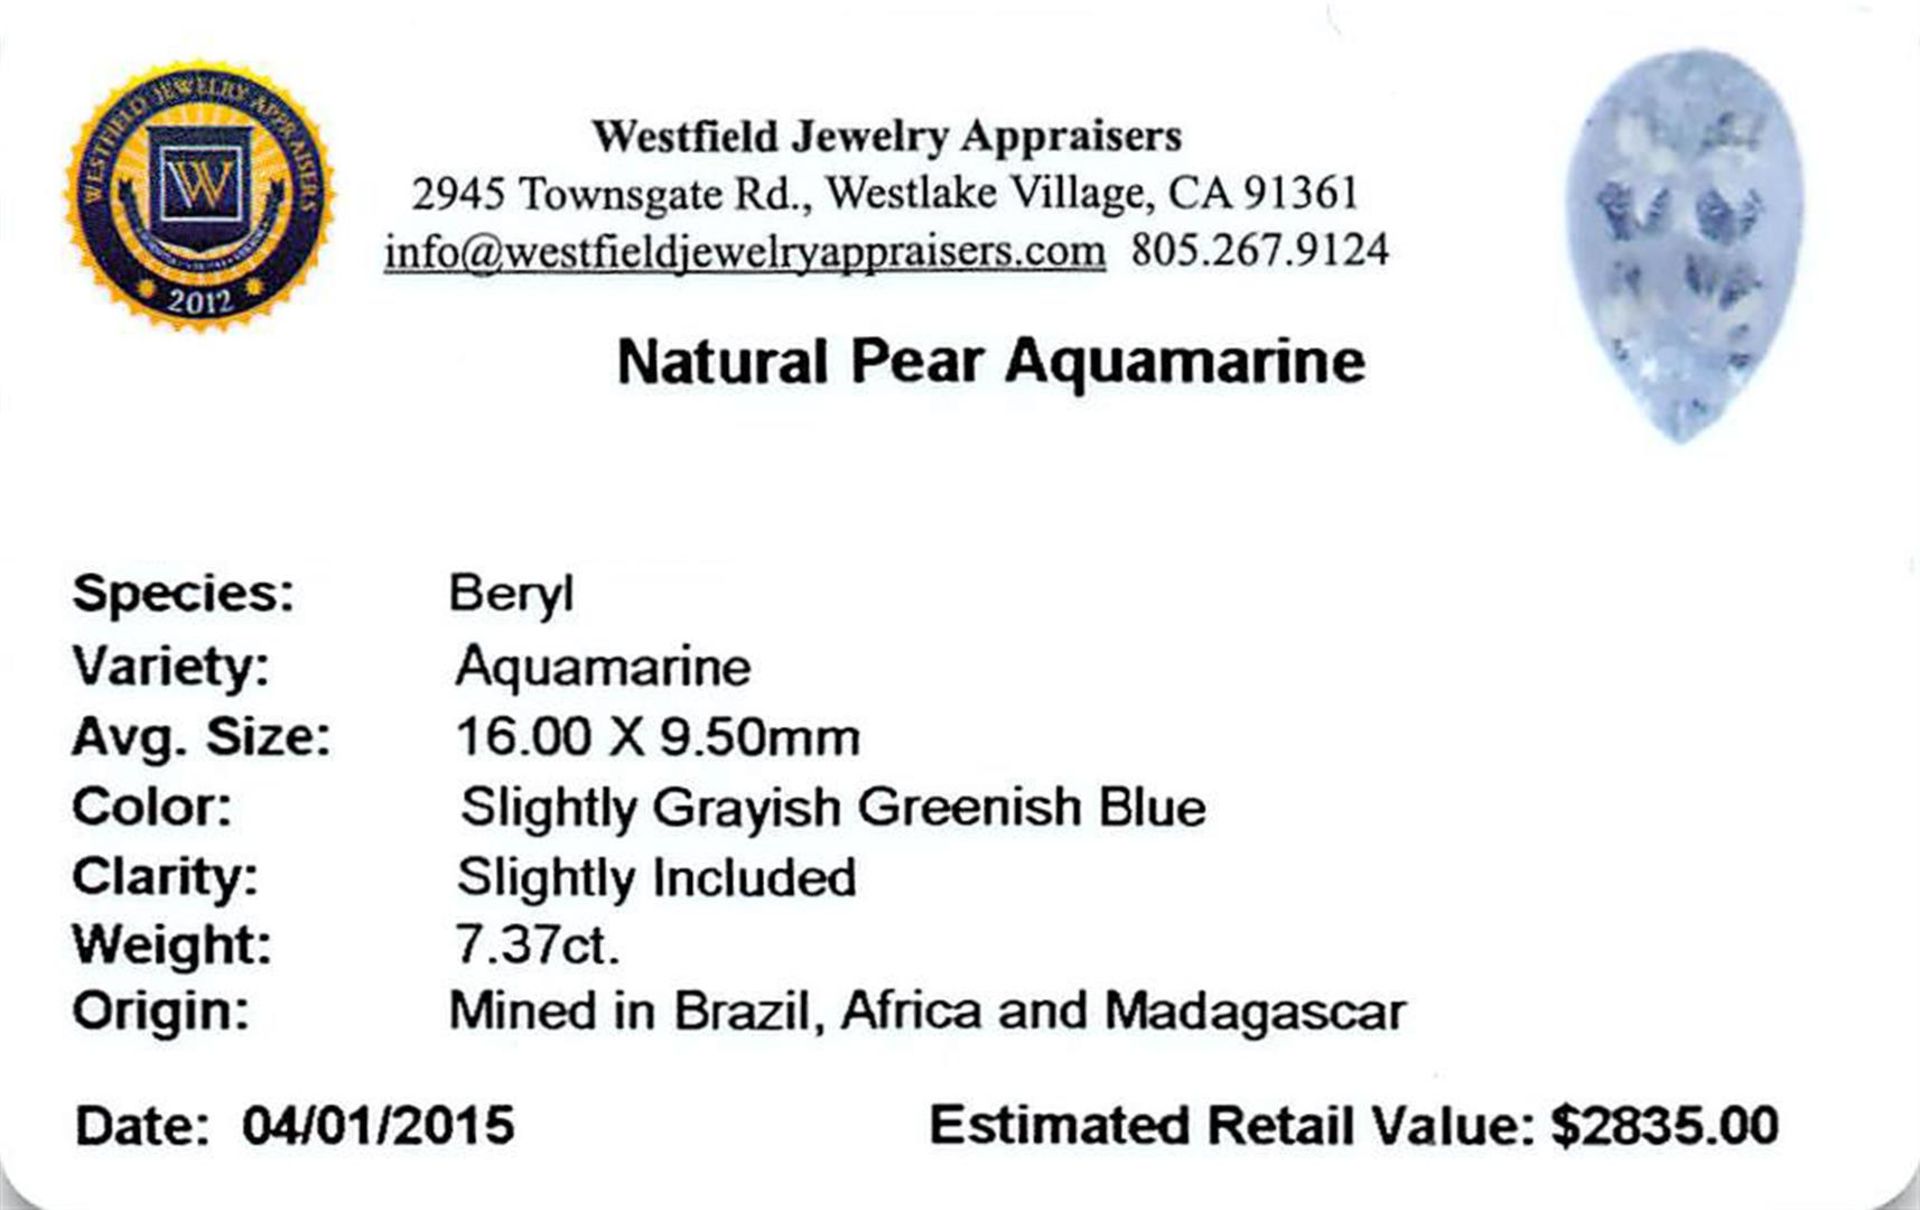 7.37 ctw Pear Aquamarine Parcel - Image 2 of 2